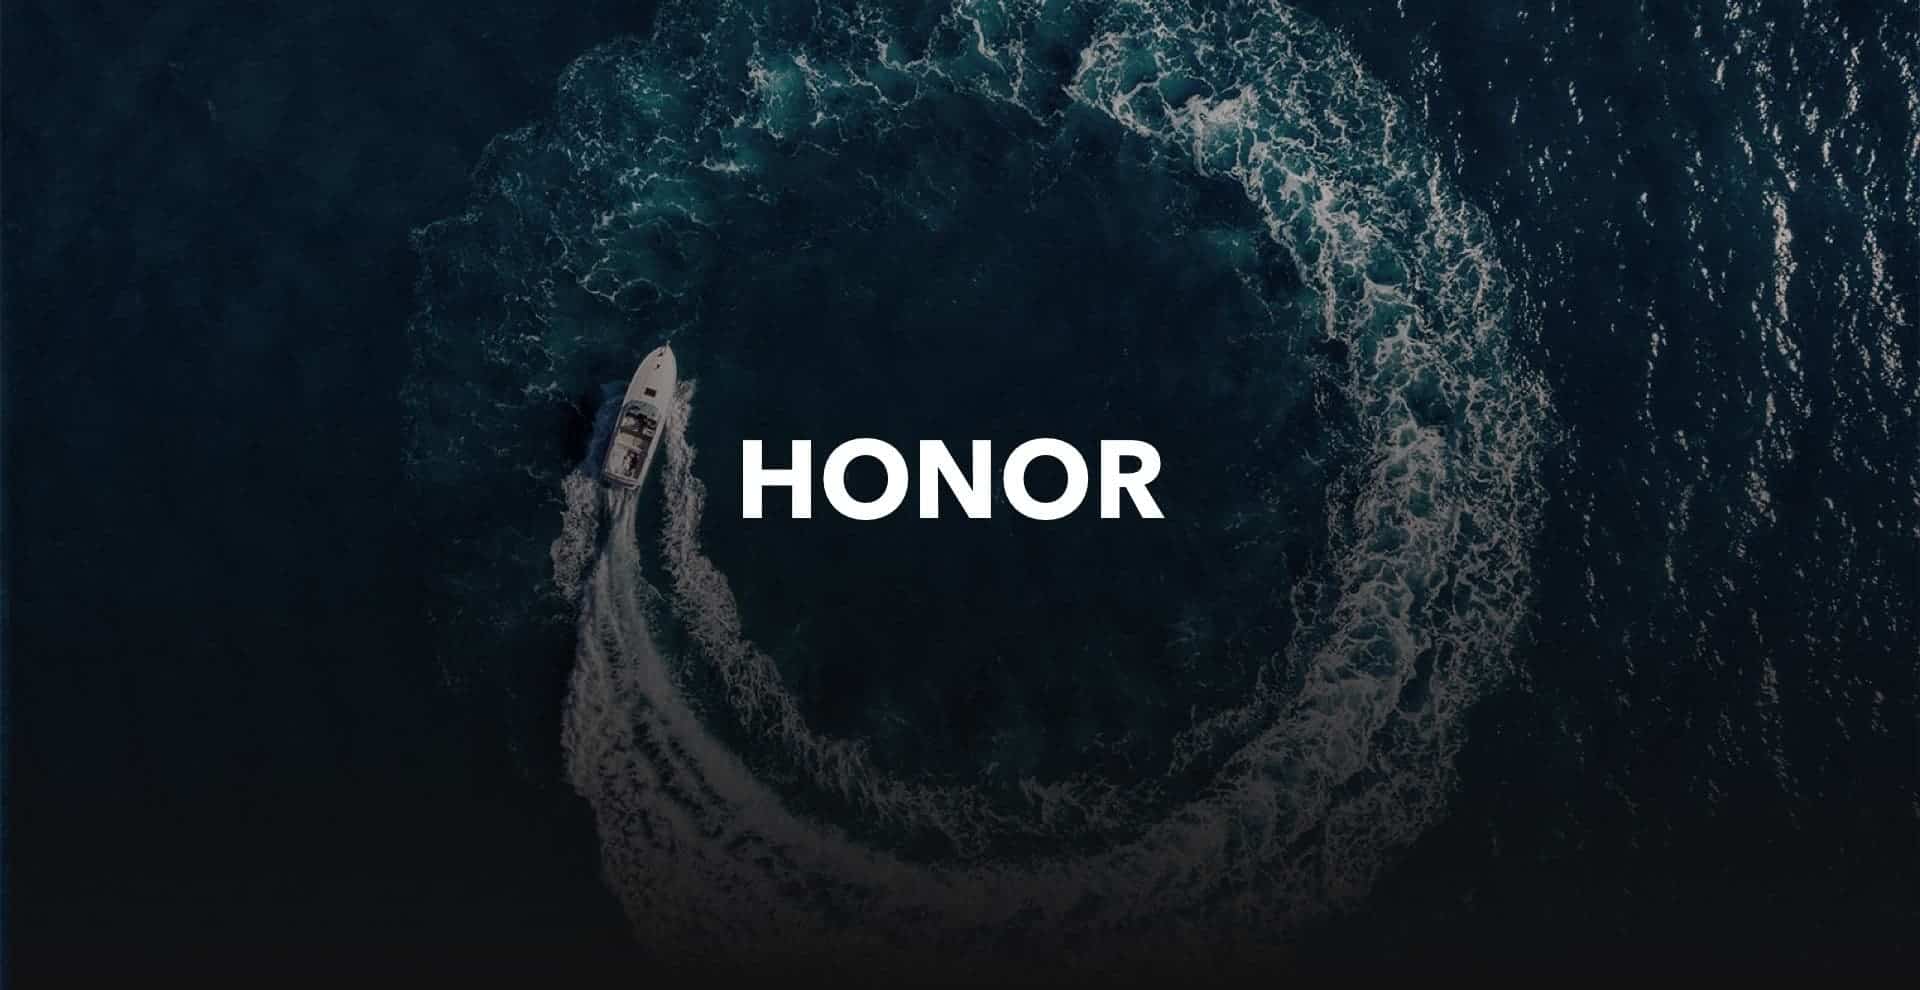 Honor Huawei